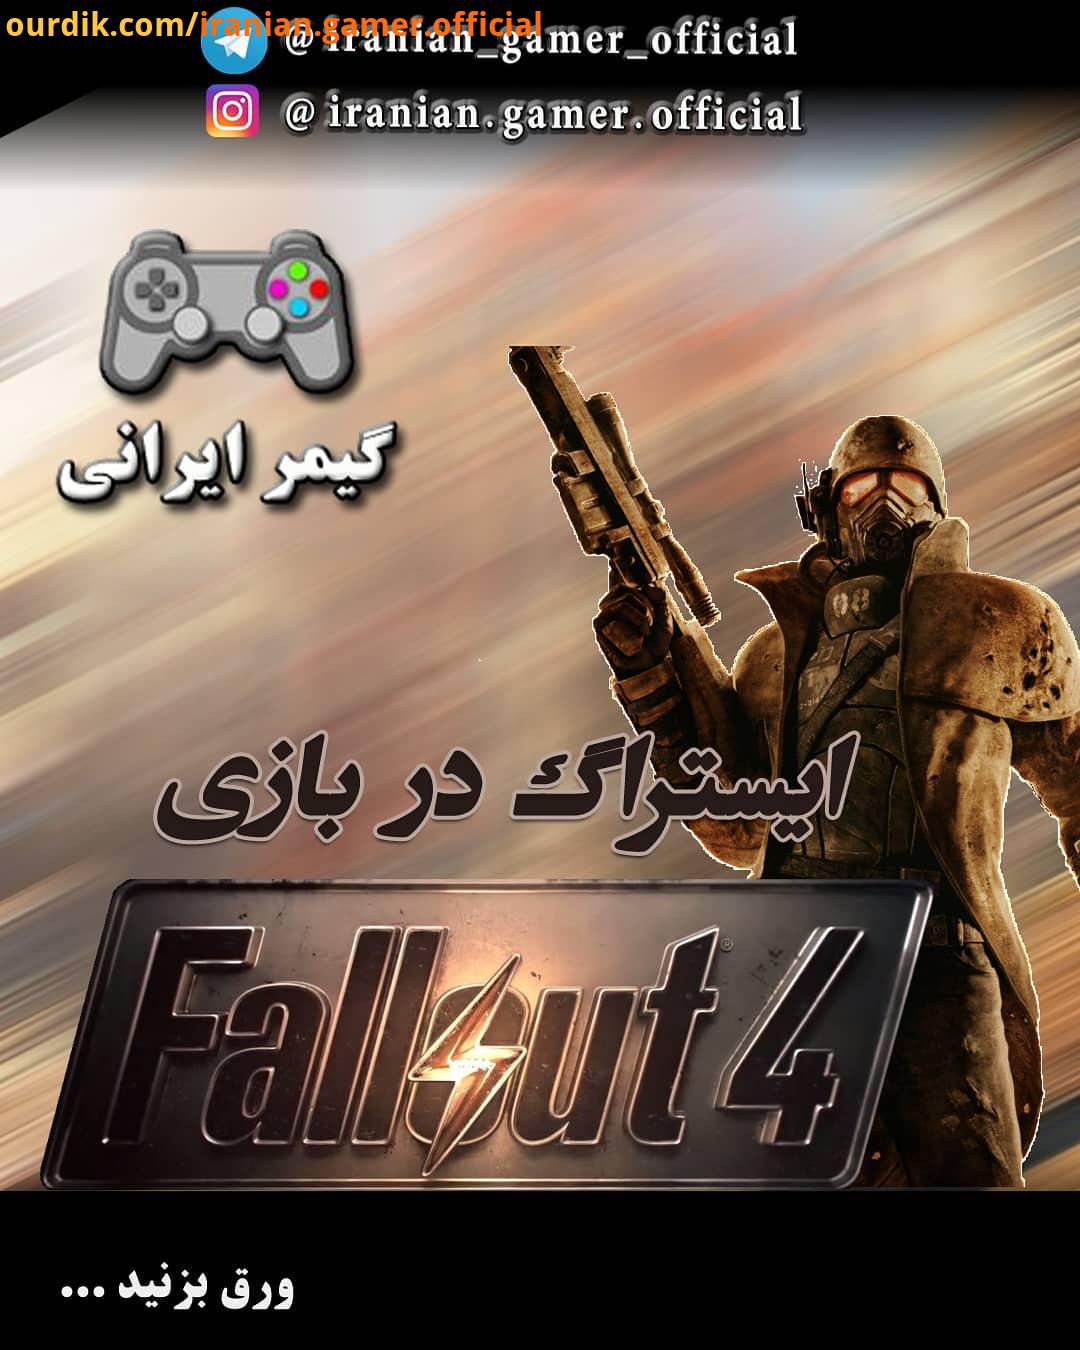 ایستراگ رفرنس در بازی Fallout بازی Fallout در سال توسط شرکت بتسدا : iranian gamer official ایس